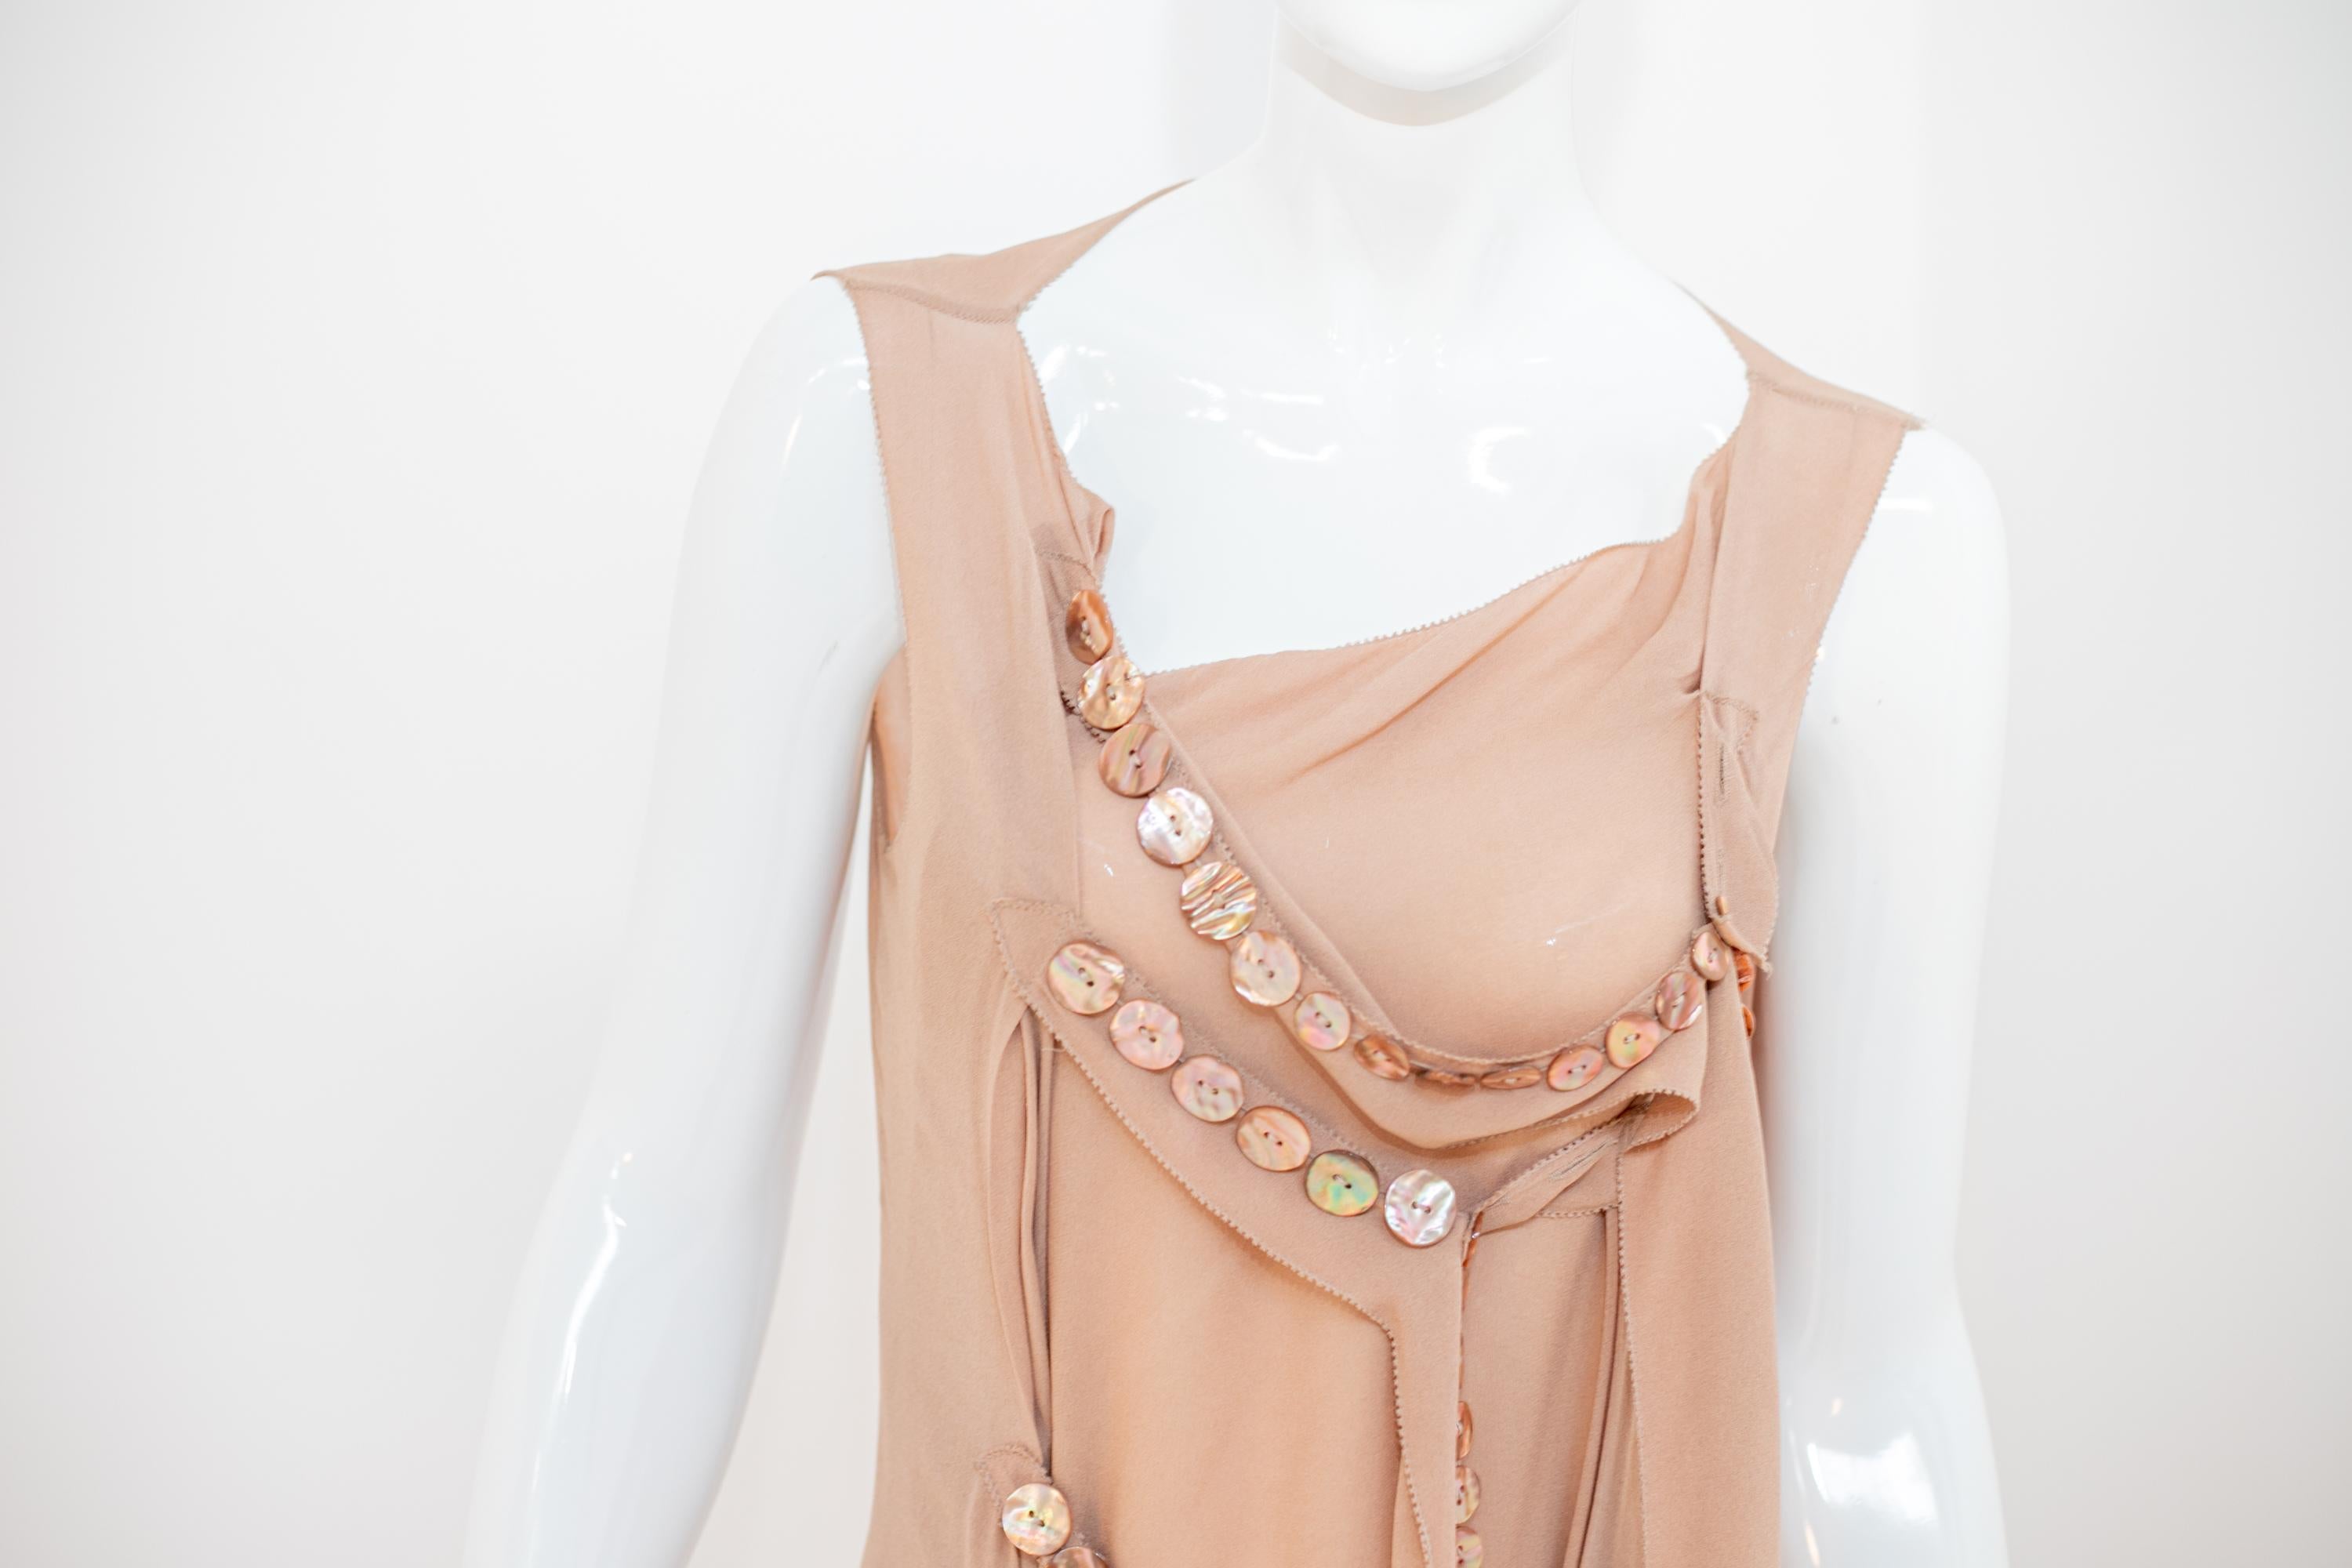 Magnifique robe longue de soirée conçue par le grand Jean Paul Gaultier dans les années 1990. La robe a encore l'étiquette originale.
La robe présente un corsage composé de deux bretelles souples qui descendent jusqu'aux chevilles et maintiennent